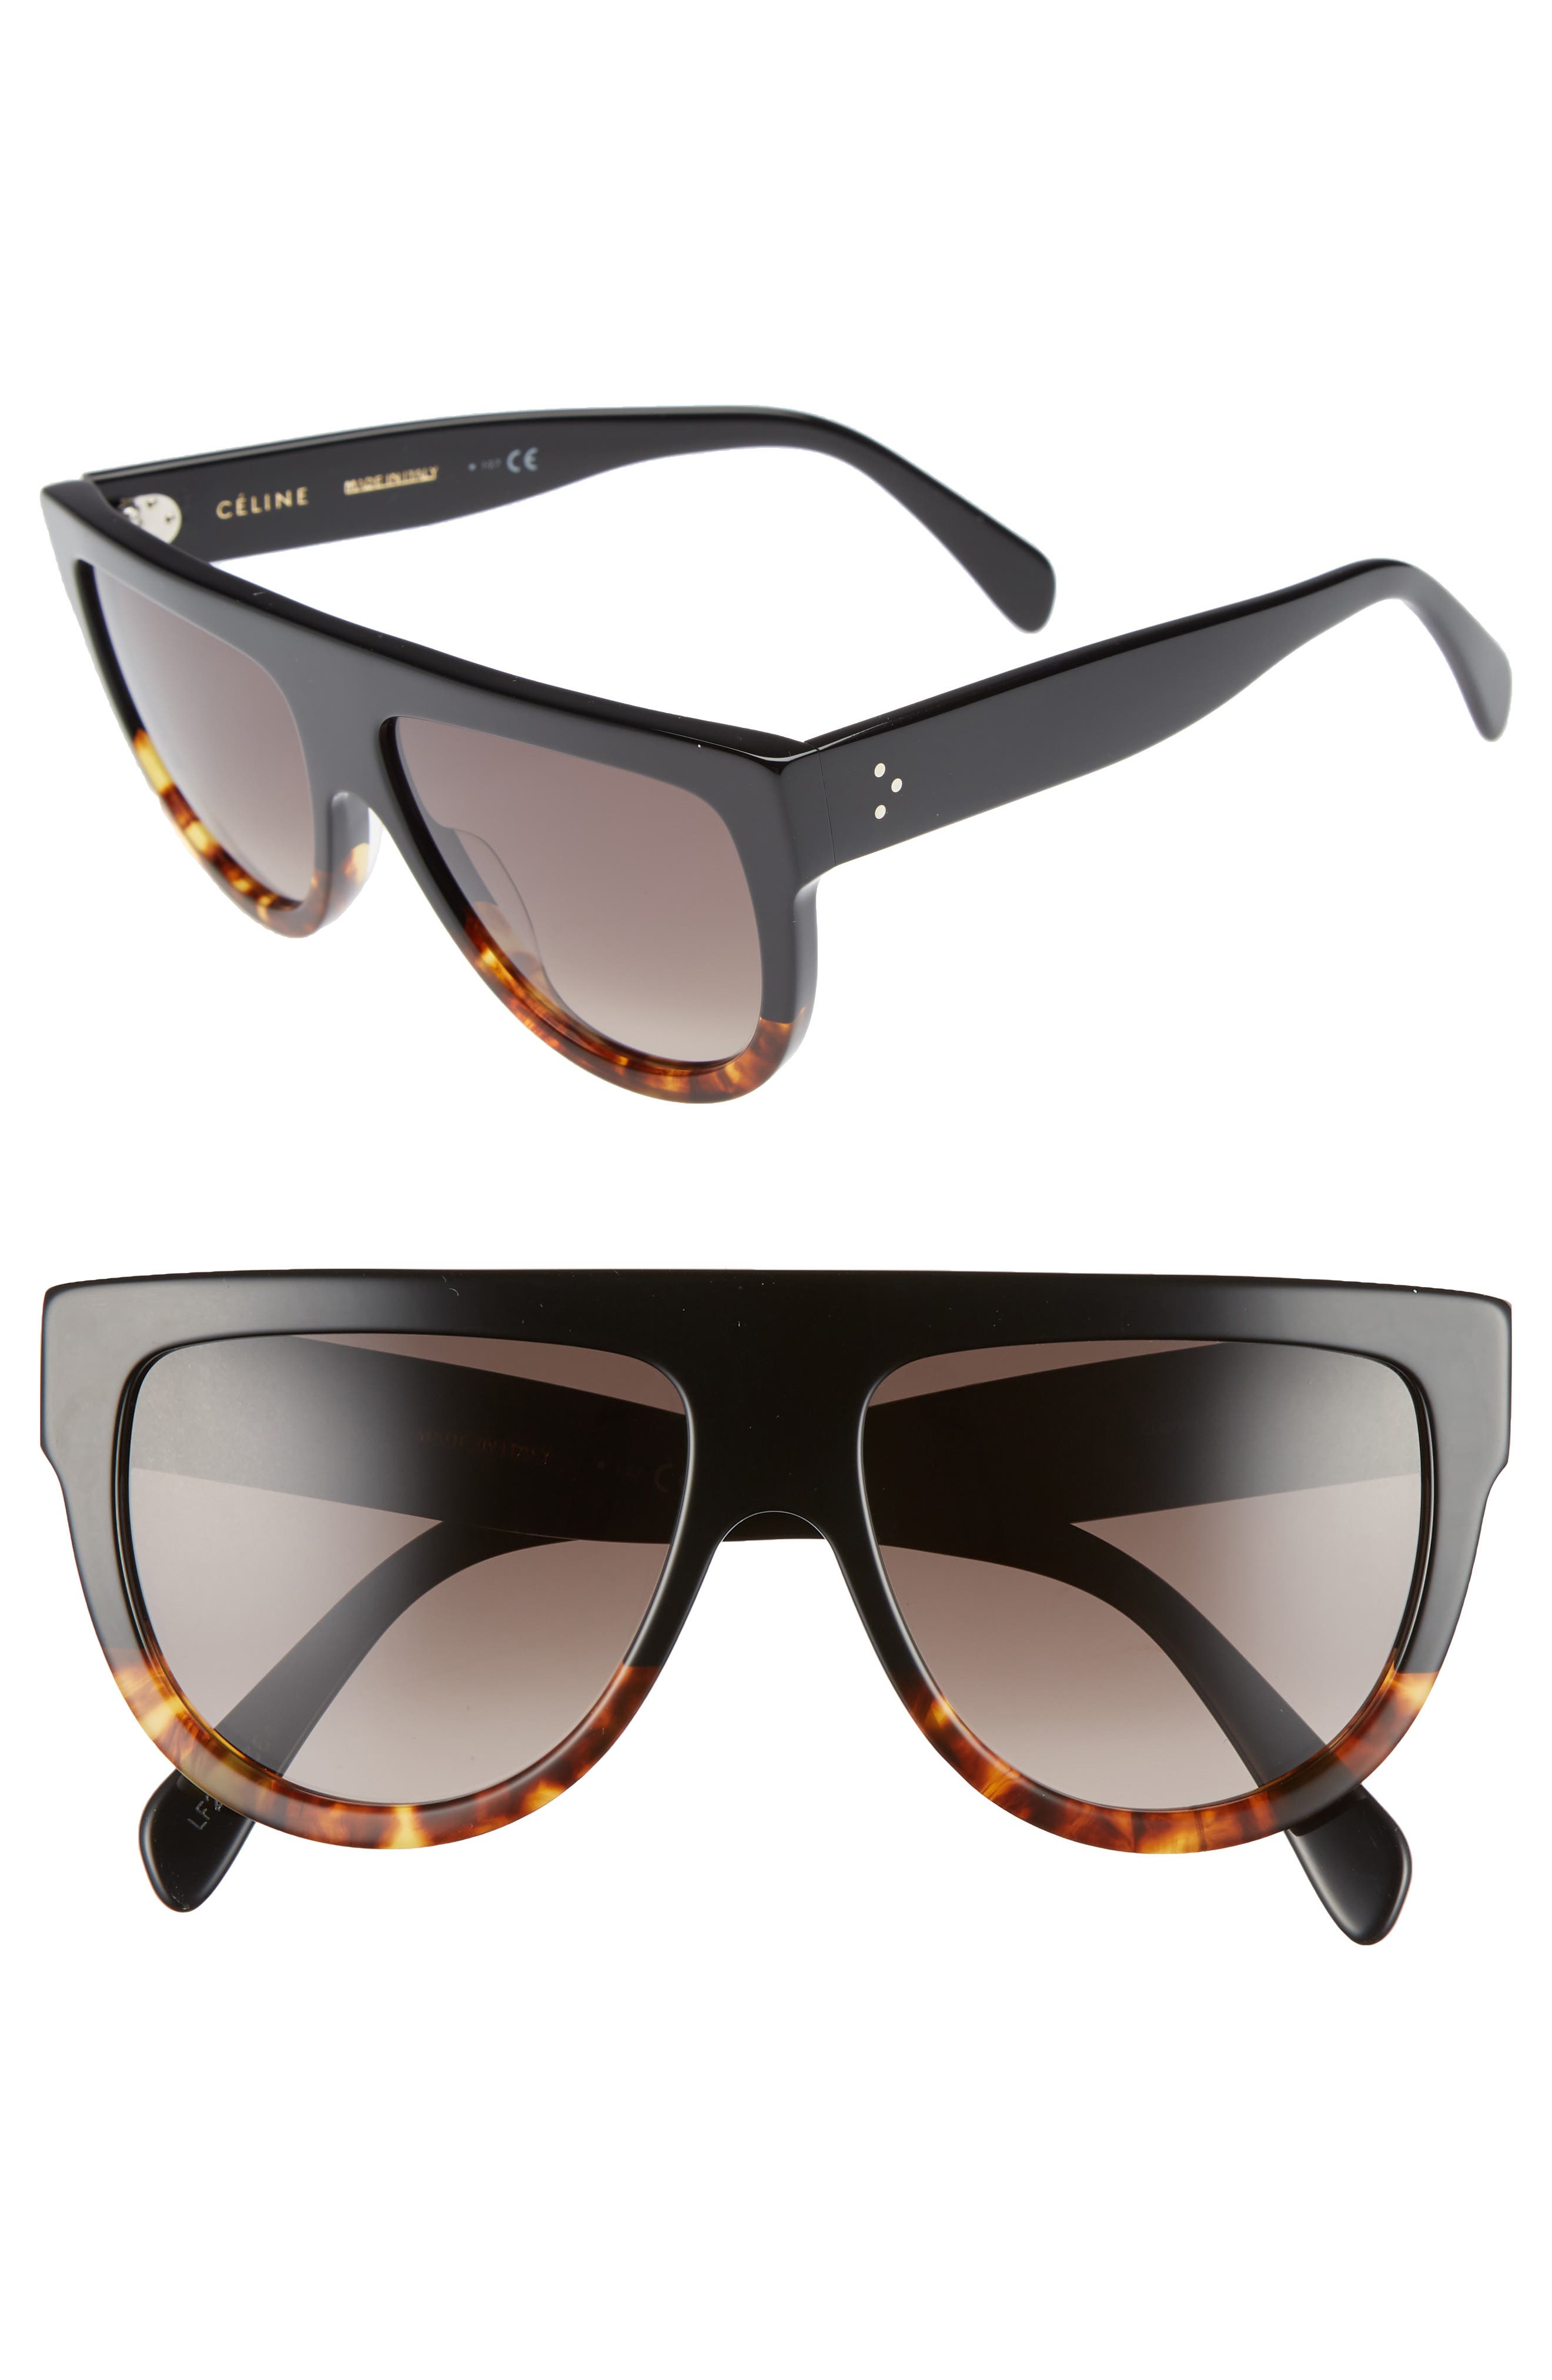 celine flat top sunglasses sale